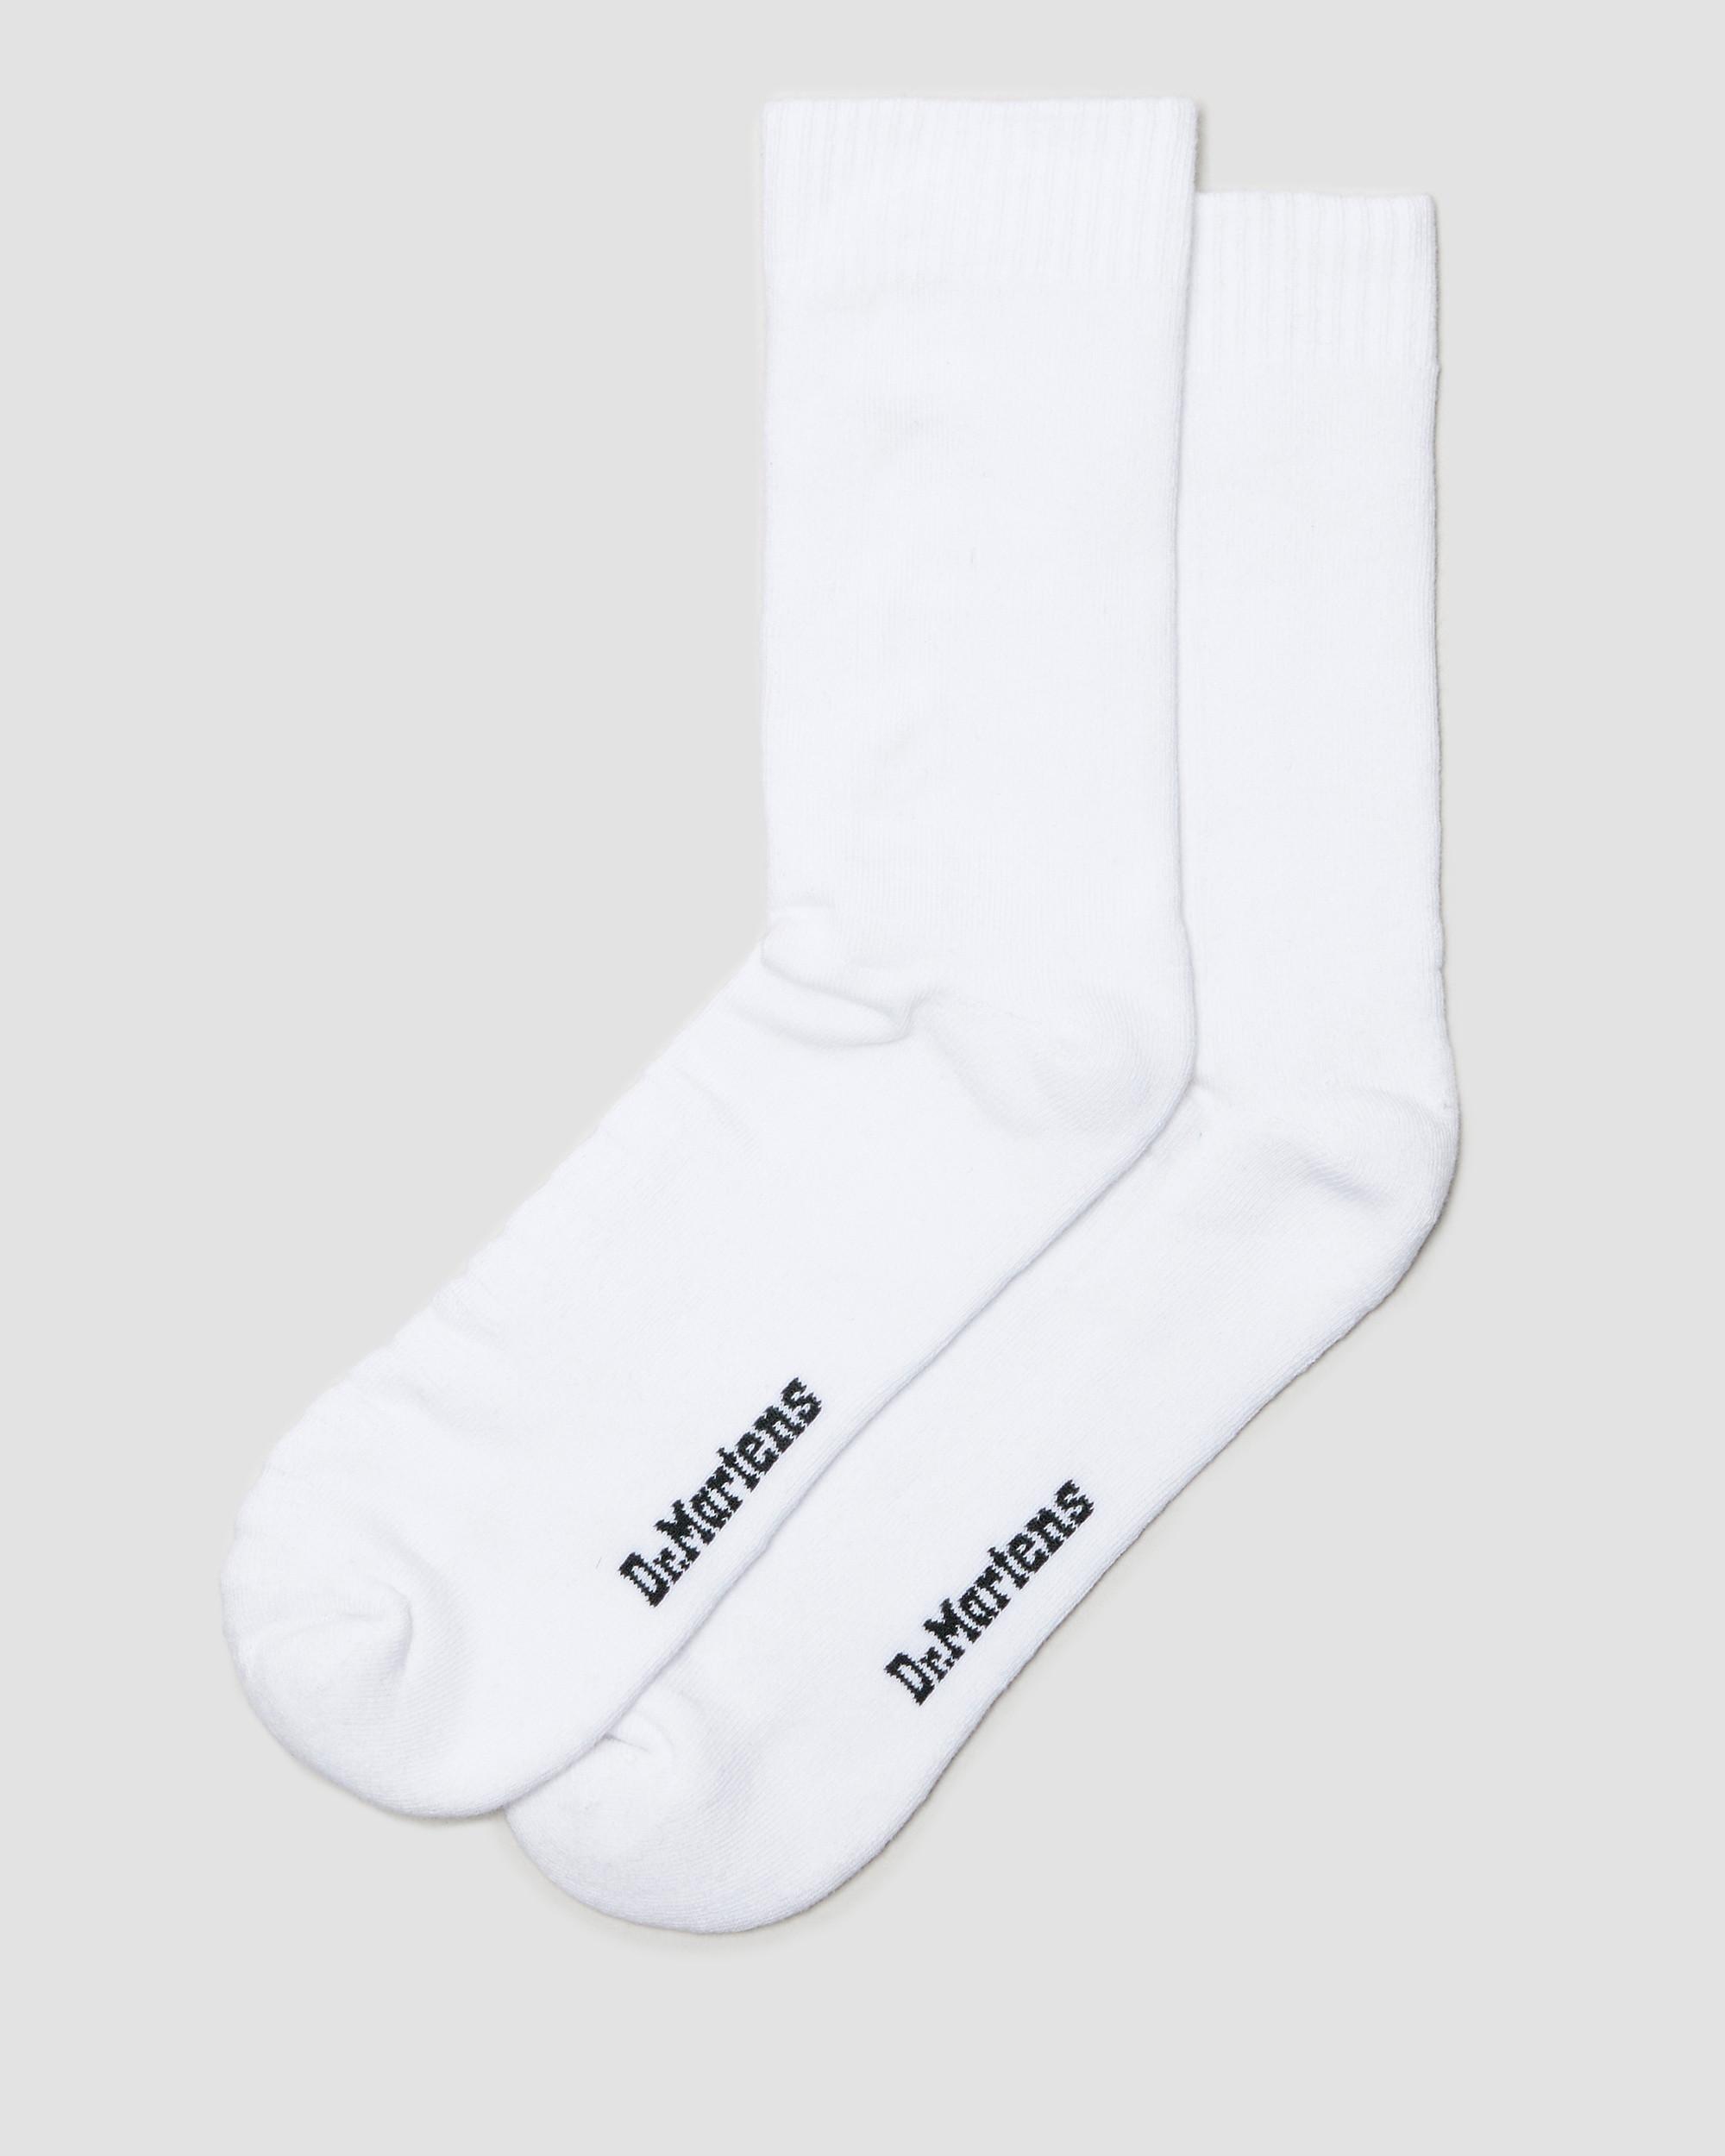 Double Doc Cotton Blend Socks in Black+White